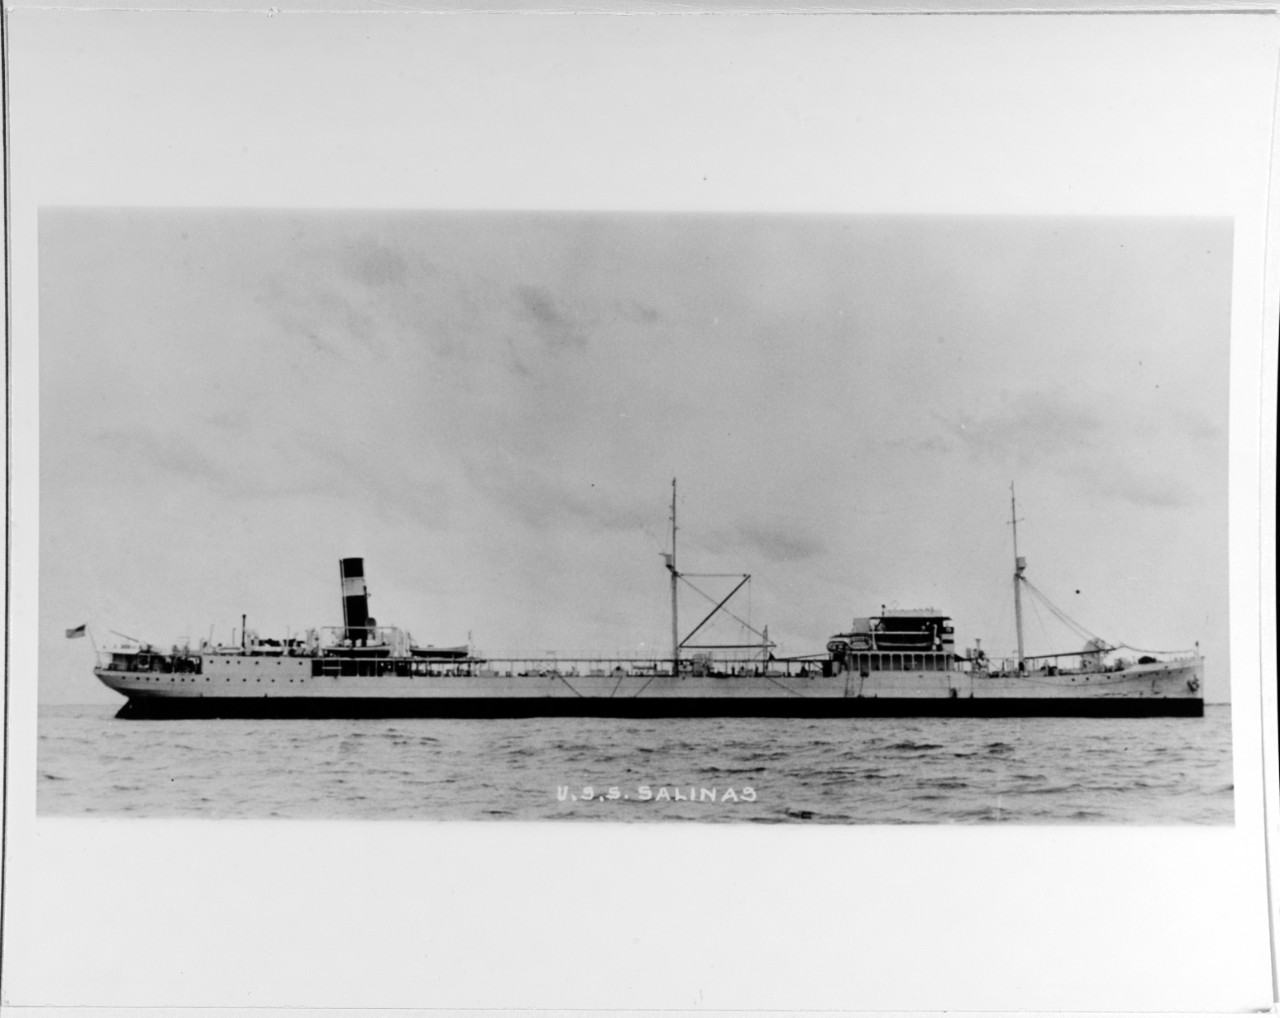 USS SALINAS (AO-19) 1921-1946.